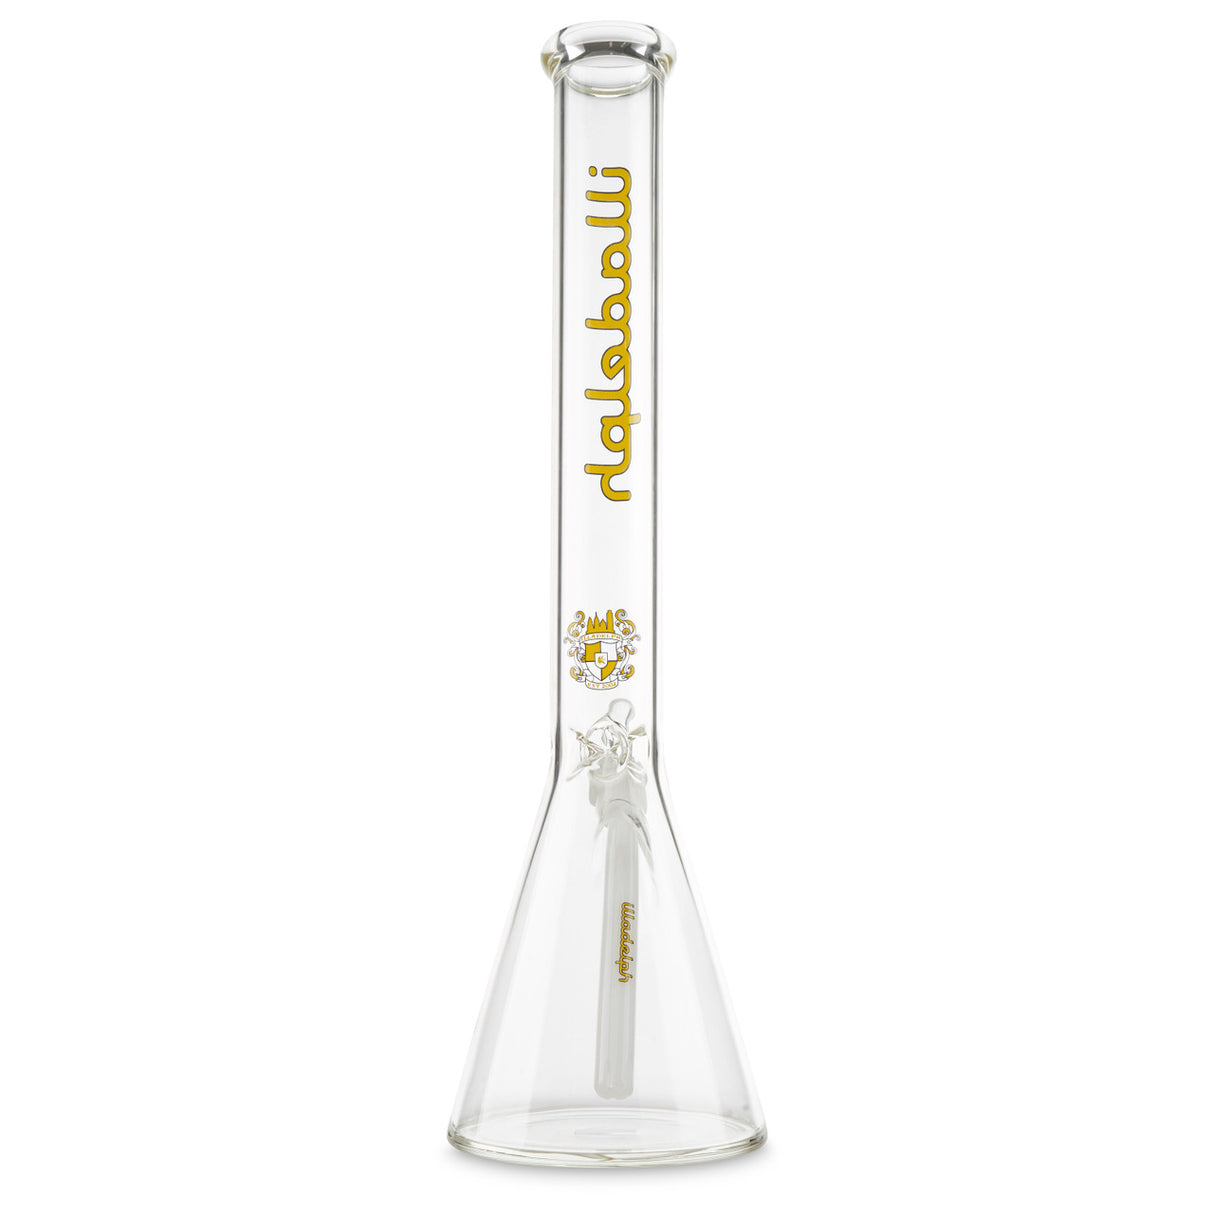 illadelph glass medium beaker for sale online